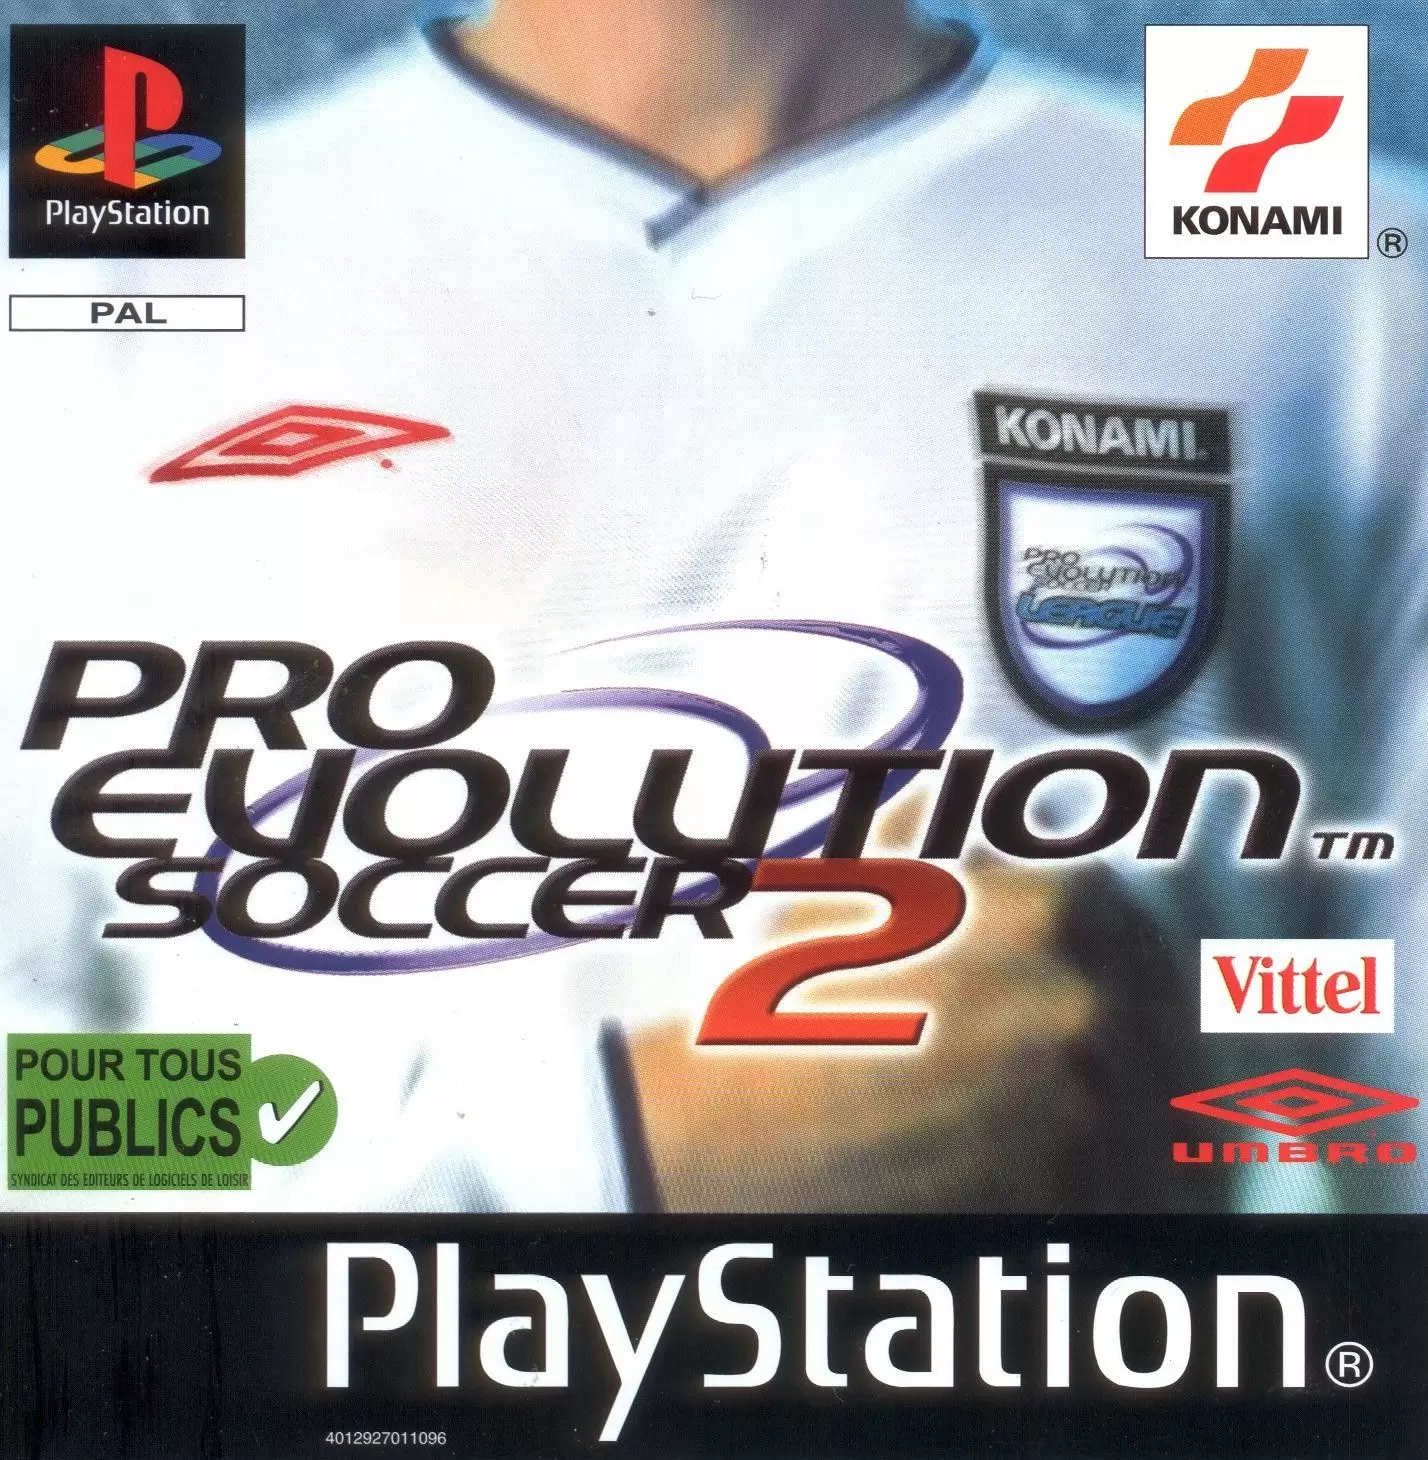 Playstation games - Pro Evolution Soccer 2